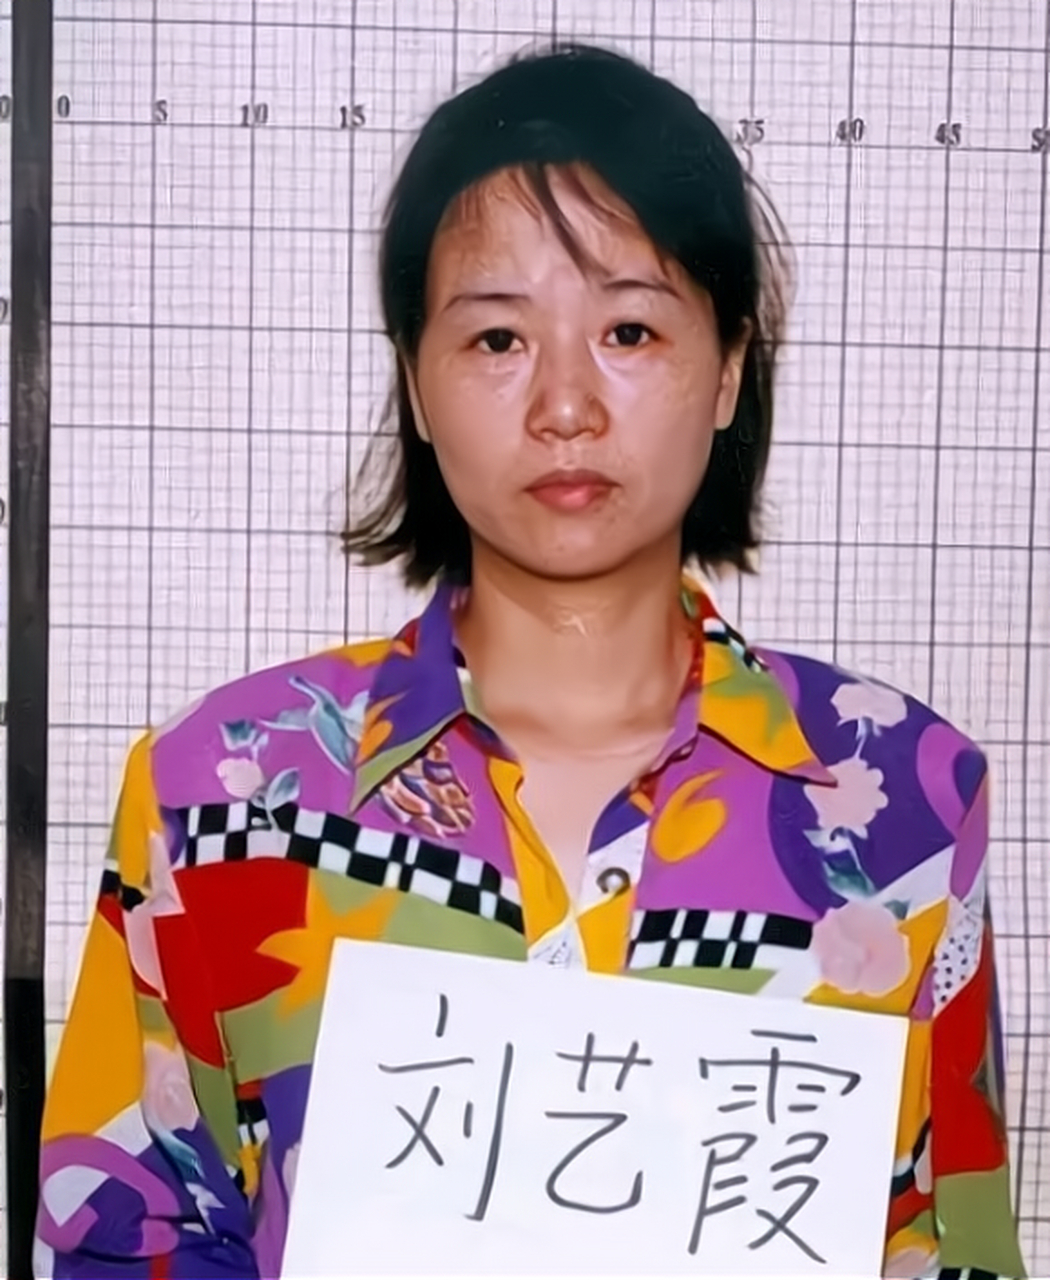 2000年5月,一名穿着碎花衣服的年轻女子被宣判死刑,她的名字叫刘艺霞